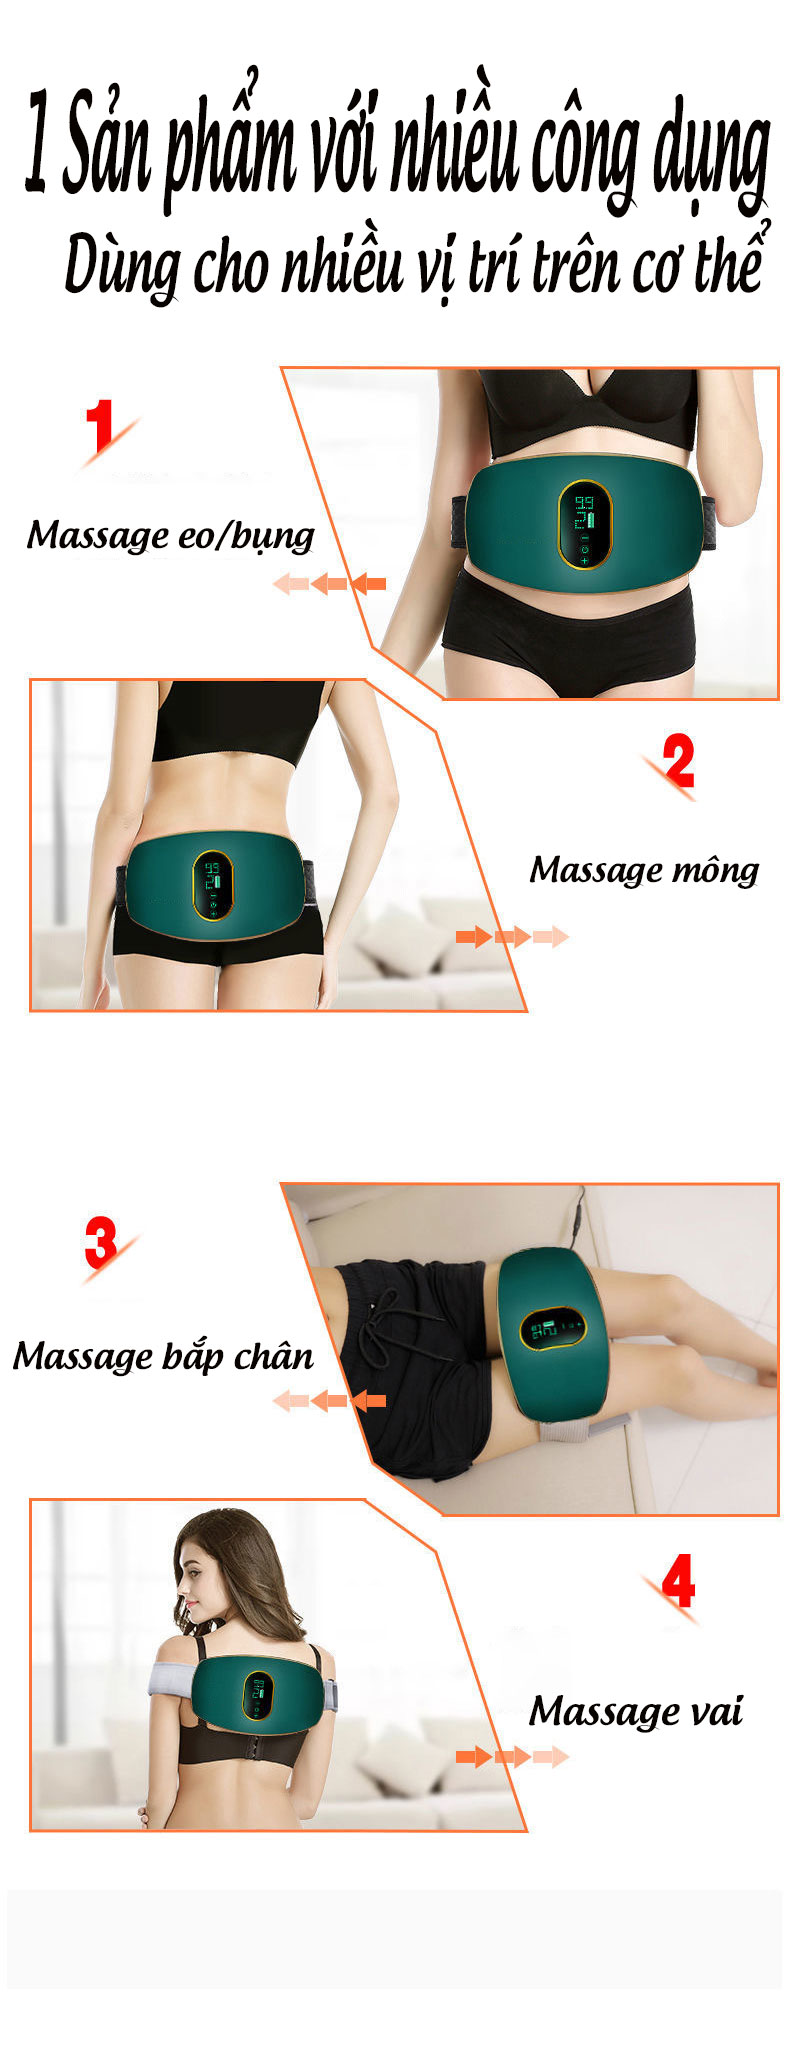 Đai massage giảm mỡ bụng cao cấp, máy mát xa xung điện đa năng giúp giảm mỡ bụng, mông, đùi,...